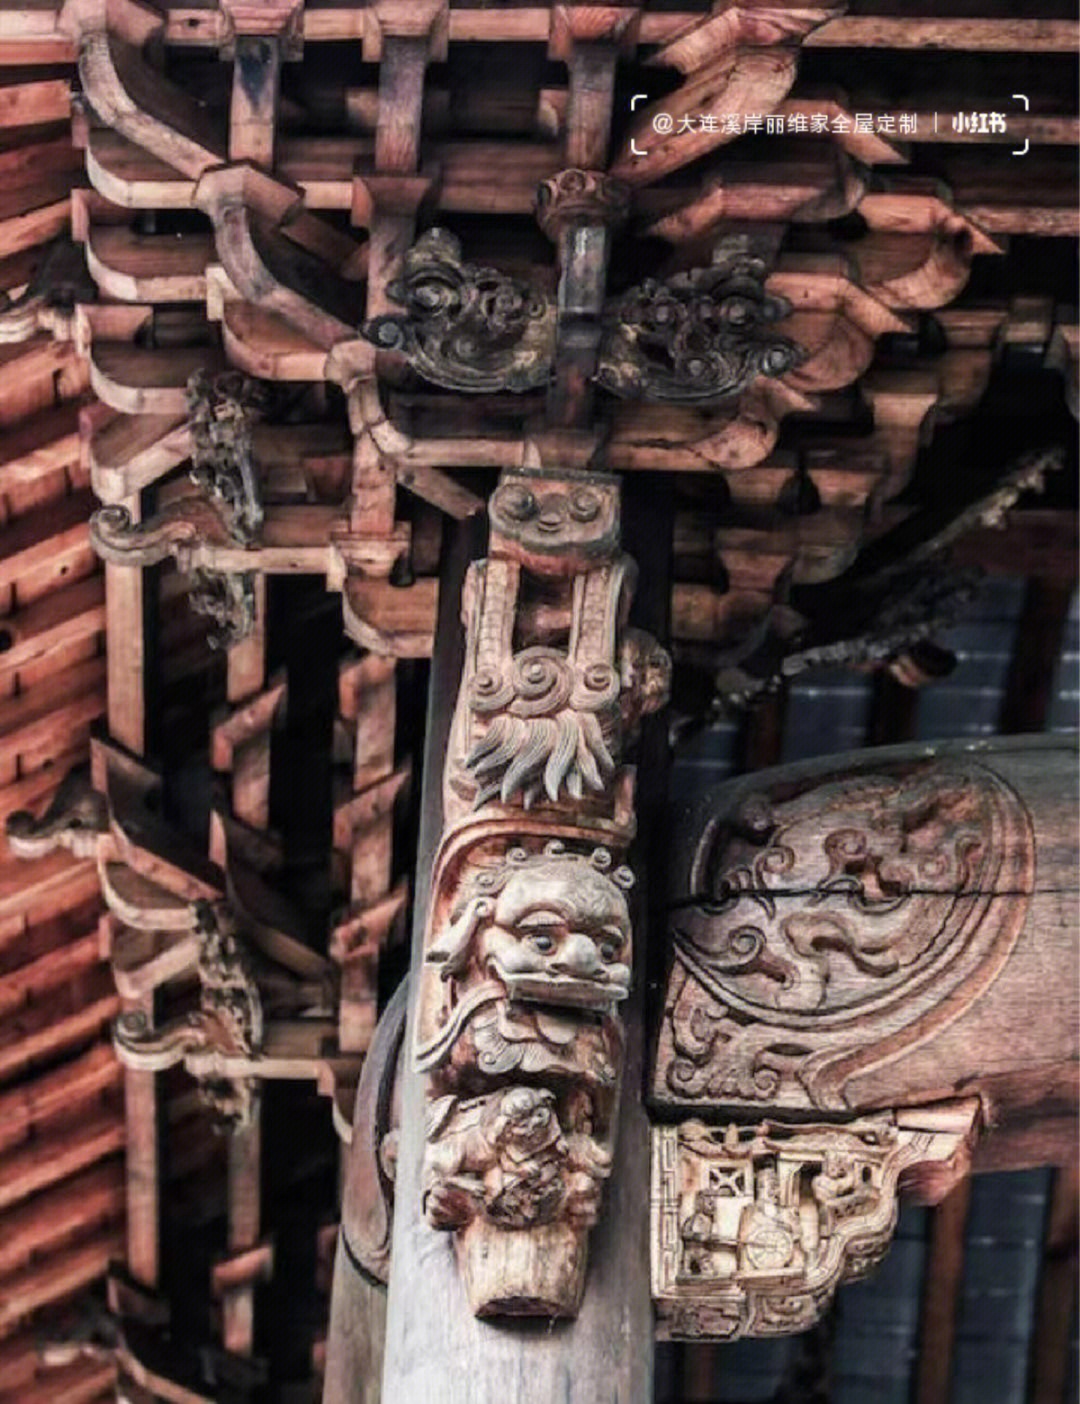 93斗拱,又称枓栱,斗科,是汉族建筑特有的结构.